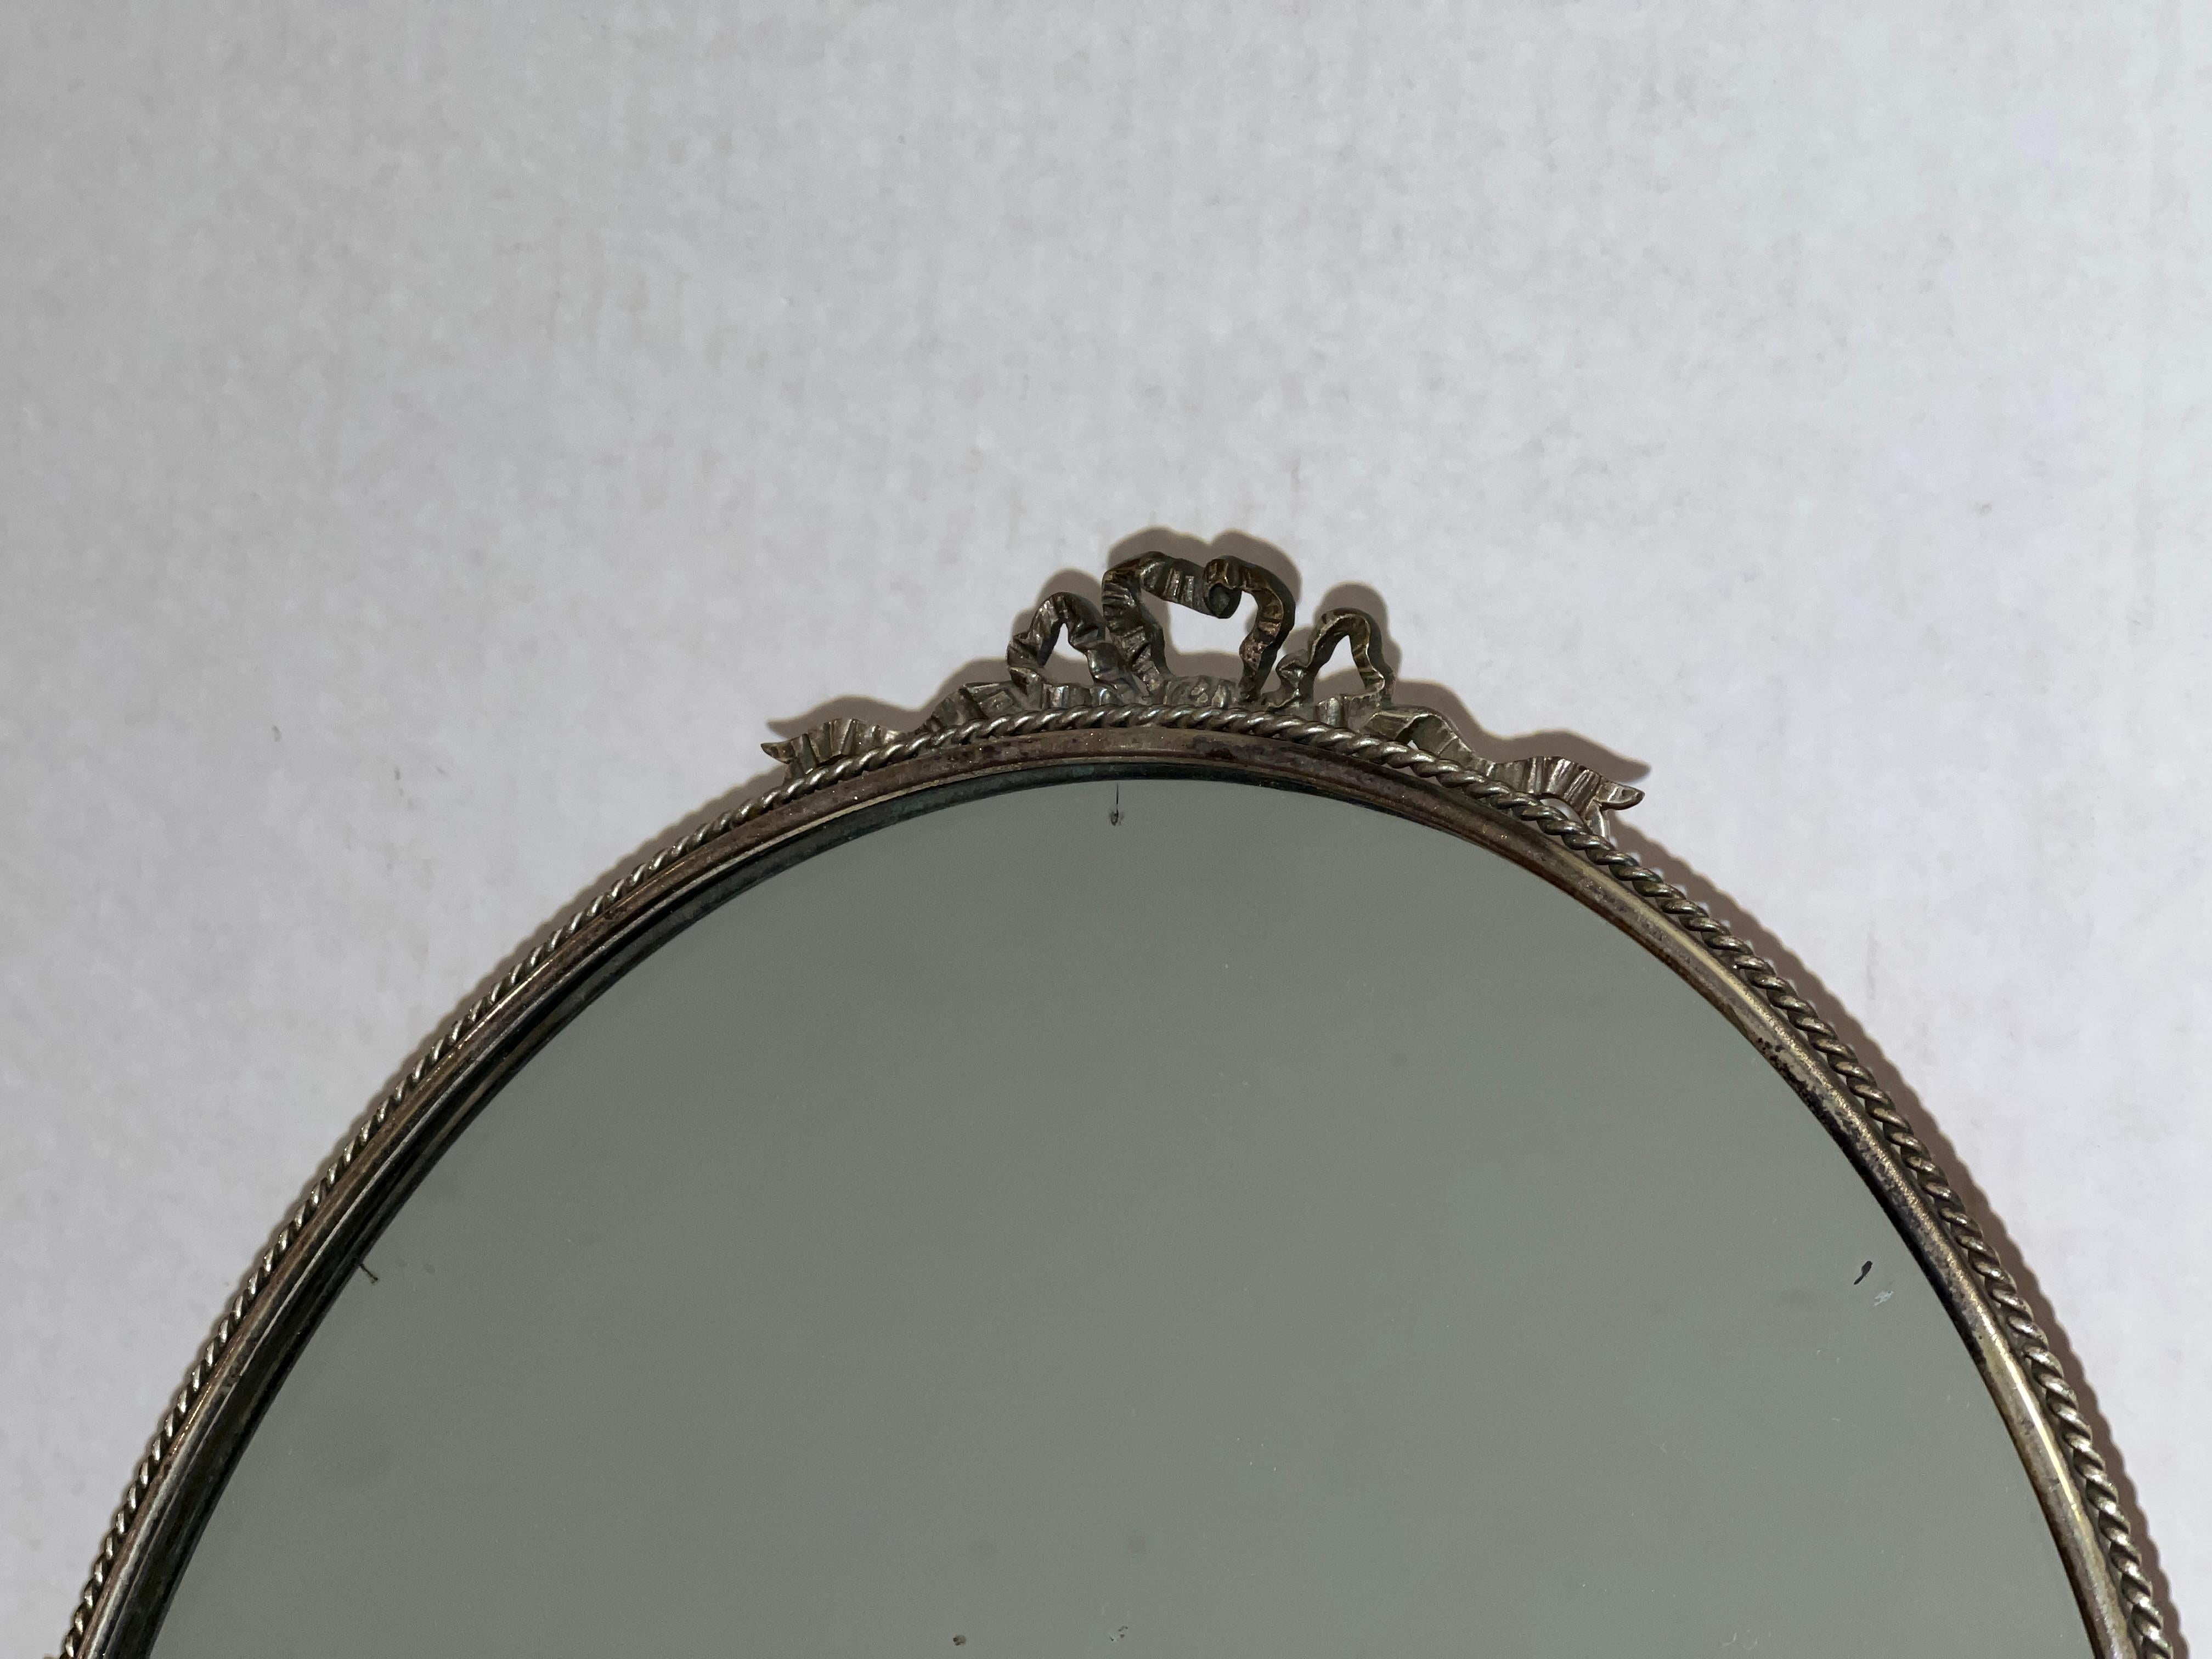 Elegant miroir de courtoisie de table ovale à dossier inclinable, de style français ancien et argenté.